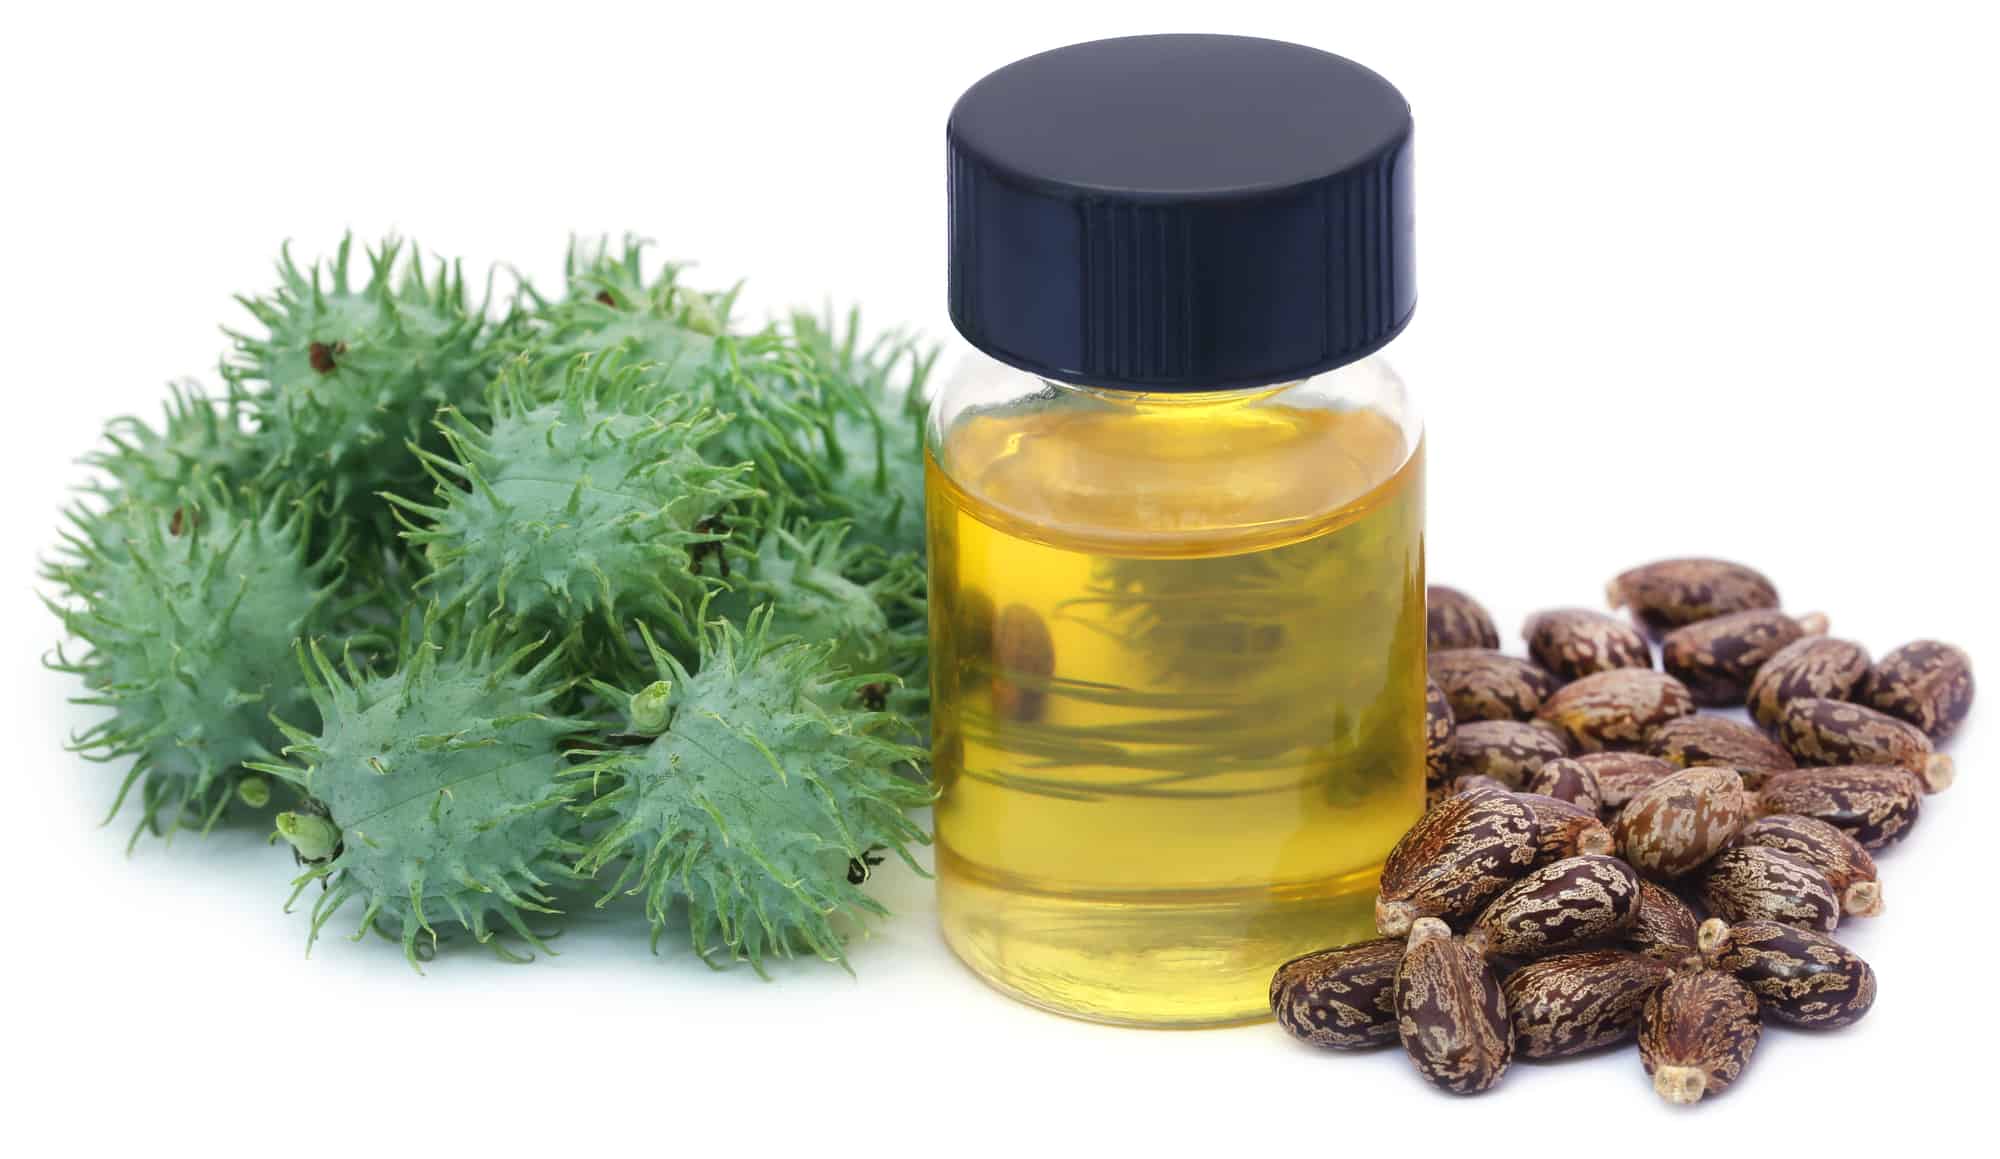 12 Essential Oils For Seborrheic Dermatitis Essential Oil Benefits